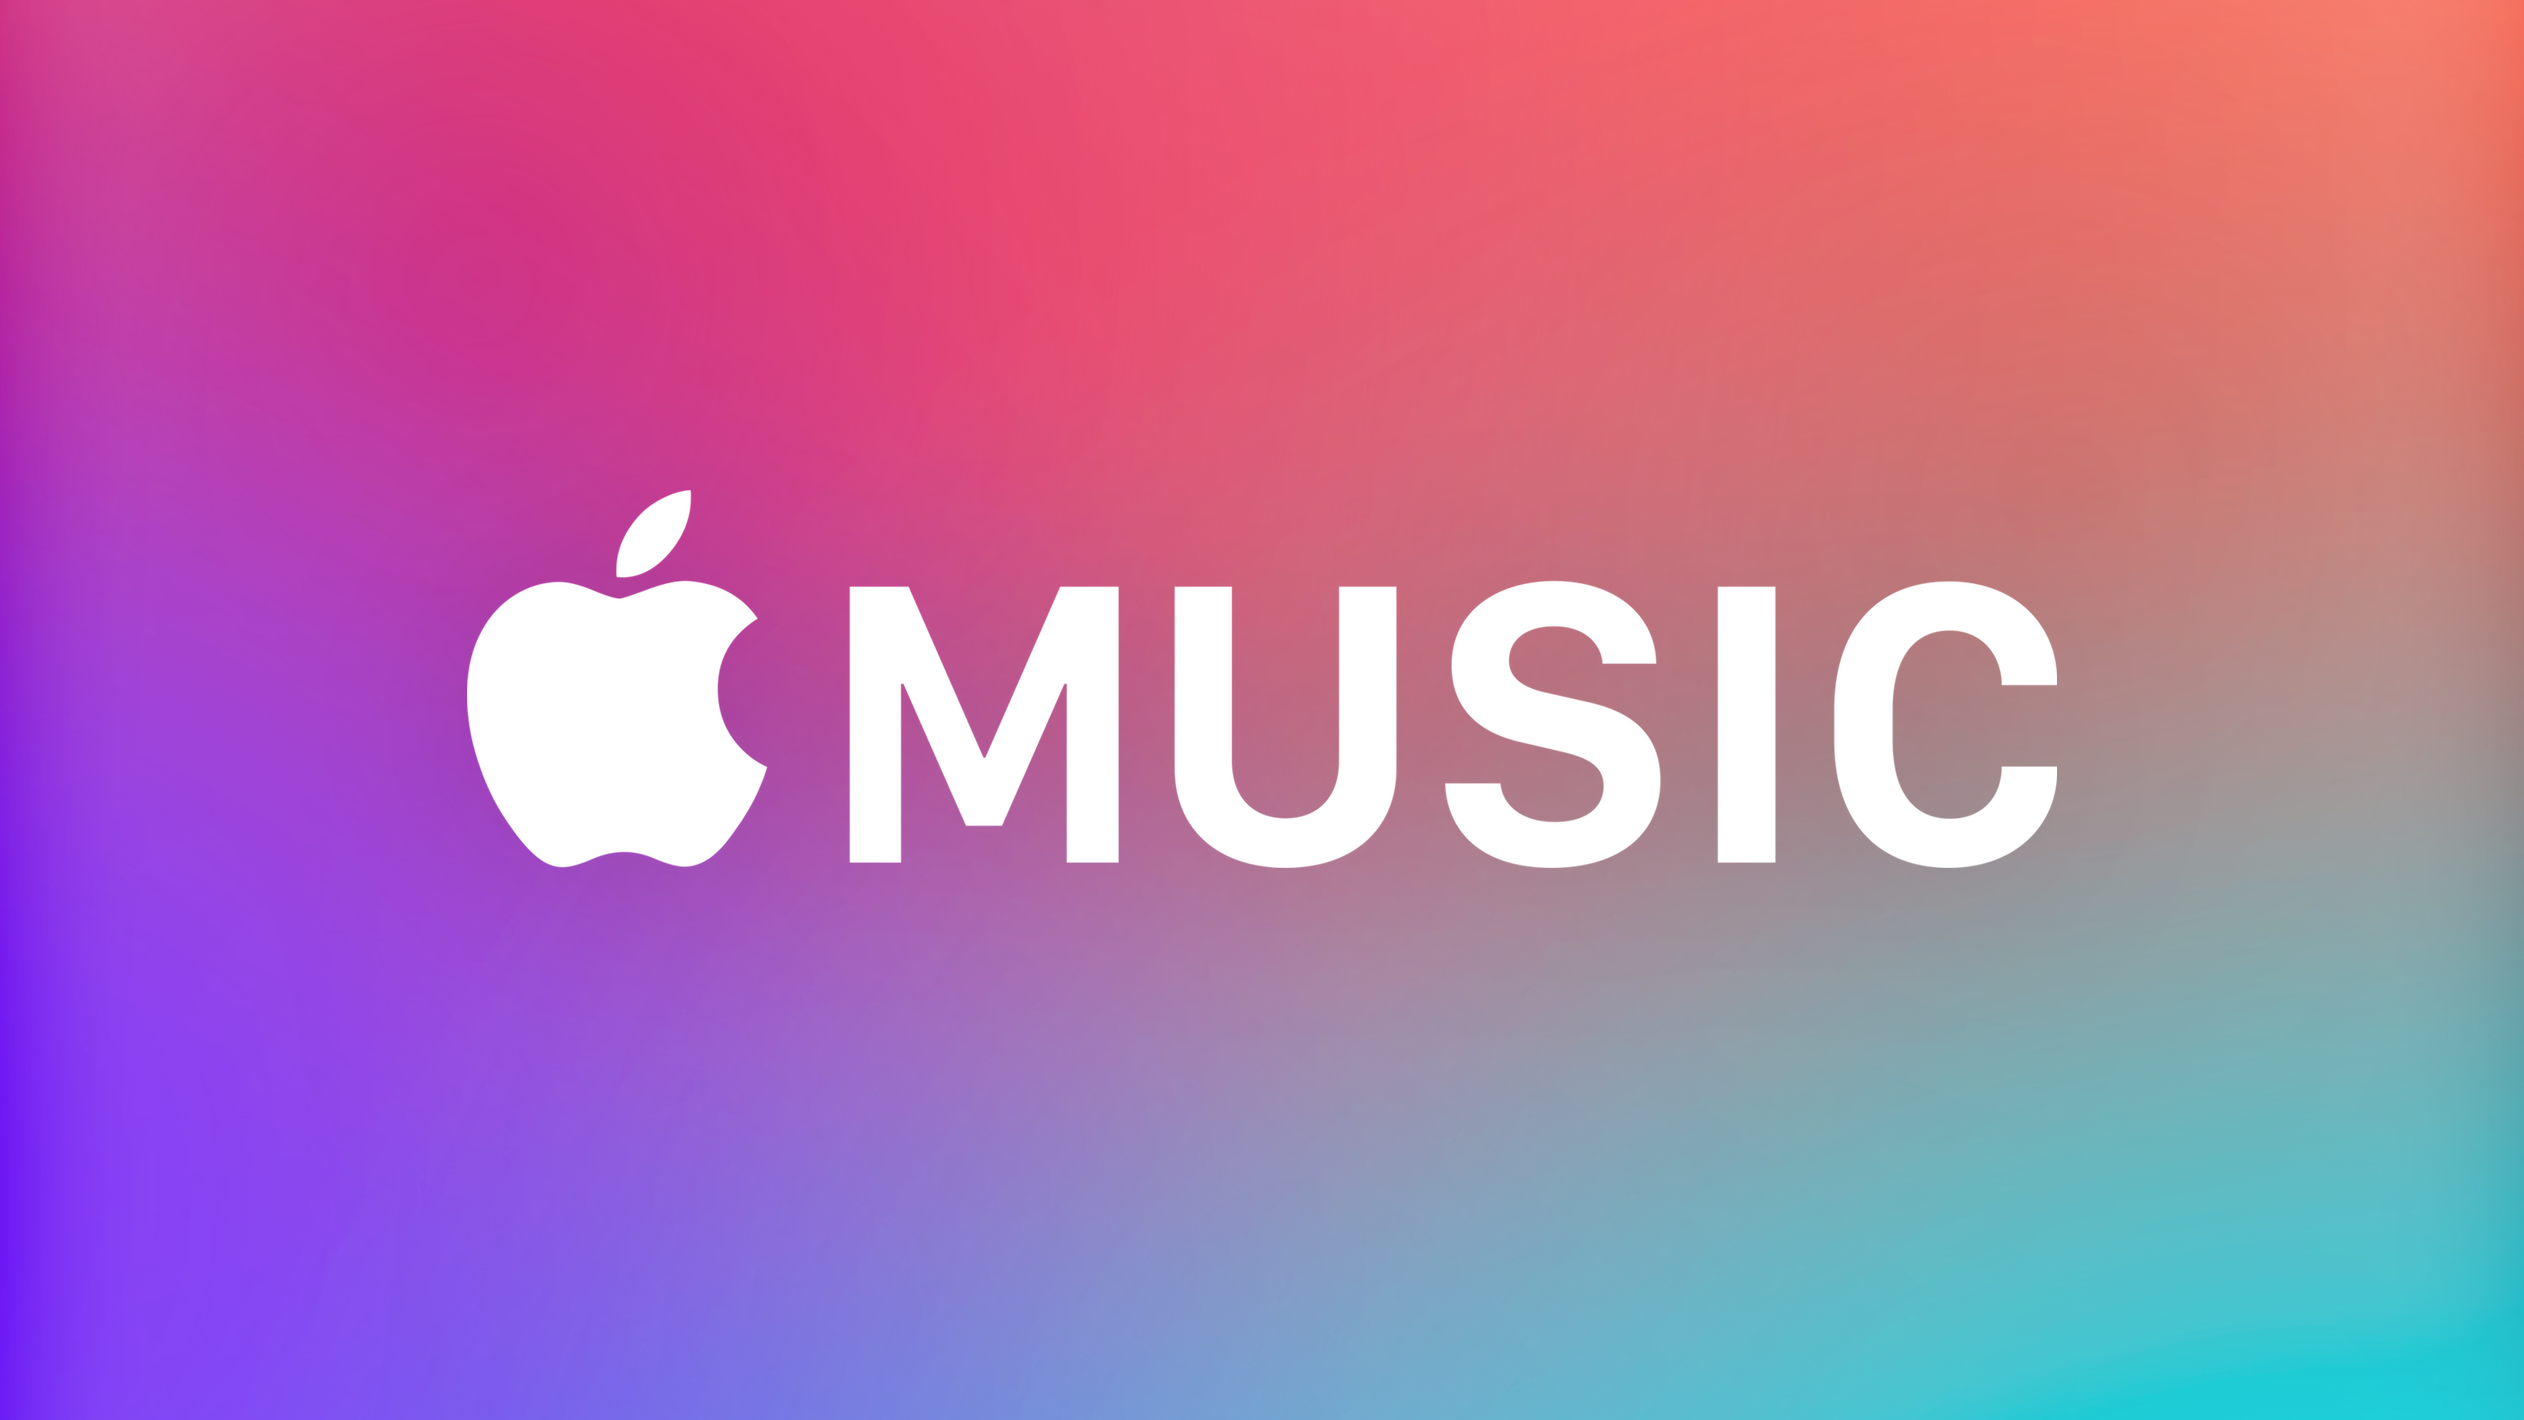 الخدمات 16 أبريل 2021 0comments
Apple الموسيقى: هذا هو مقدار المال الذي يحصل عليه الفنانون المفضلون لديك Apple